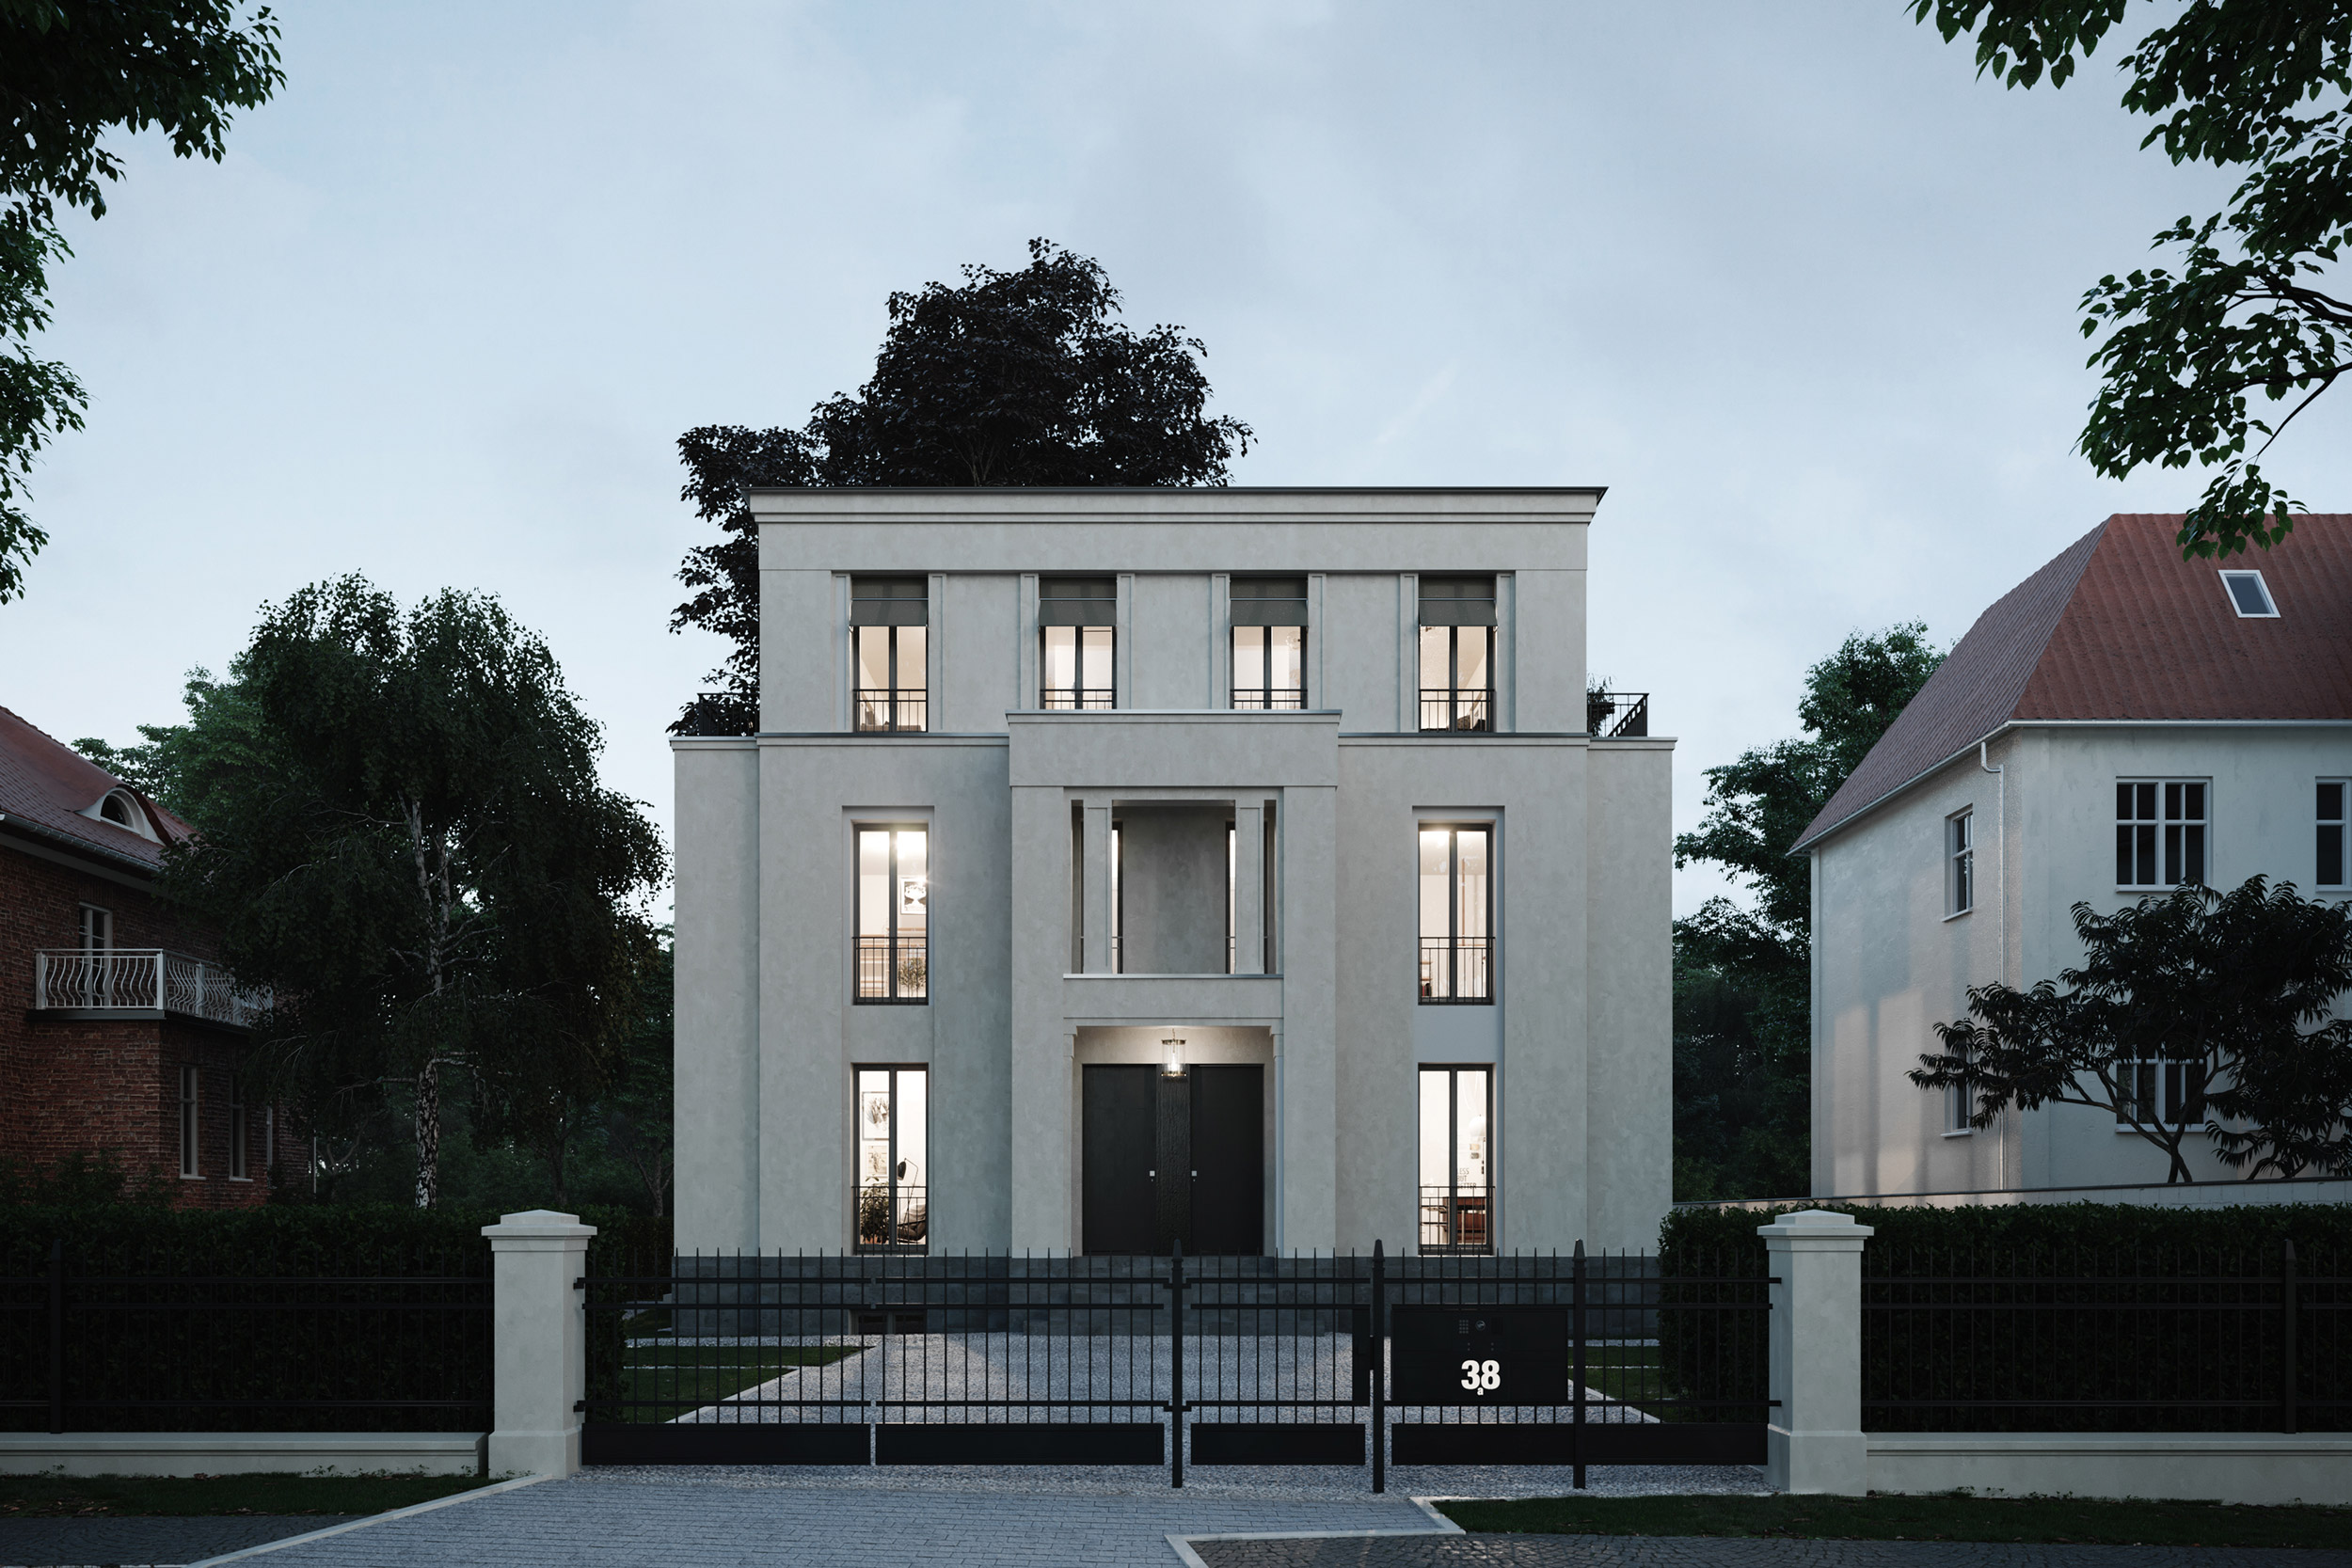 Podbielski 38 - Klassische Stadtvilla mit modernen Eigentumswohnungen in Berlin-Dahlem